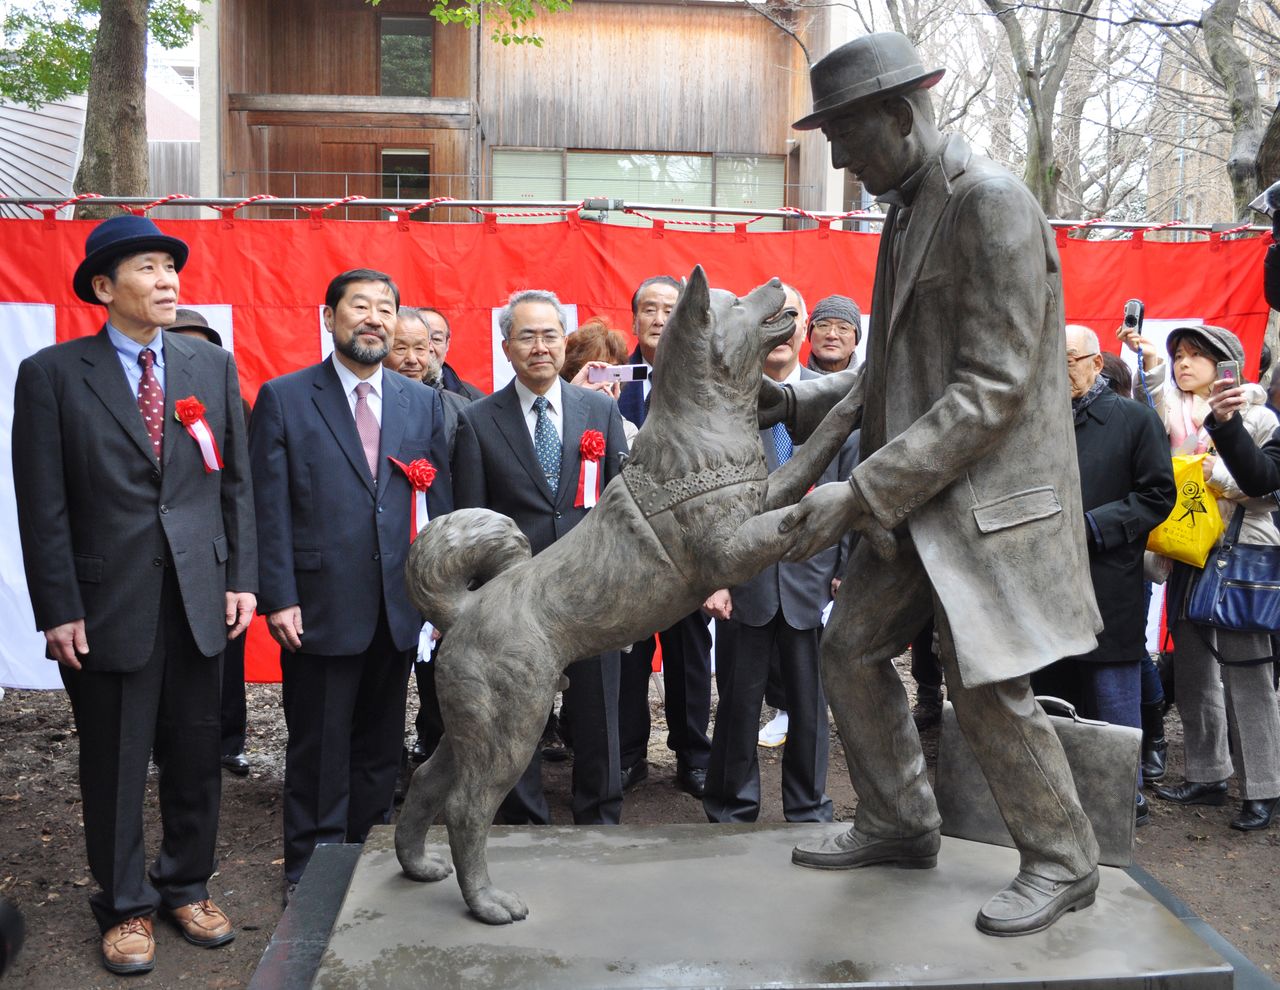 تمثال للكلب هاتشي والبروفيسور أوينو يصور لحظة لقائهما في محطة شيبويا، وهو موجود في كلية الزراعة بجامعة طوكيو في حي بونكيو بطوكيو (© جيجي برس).